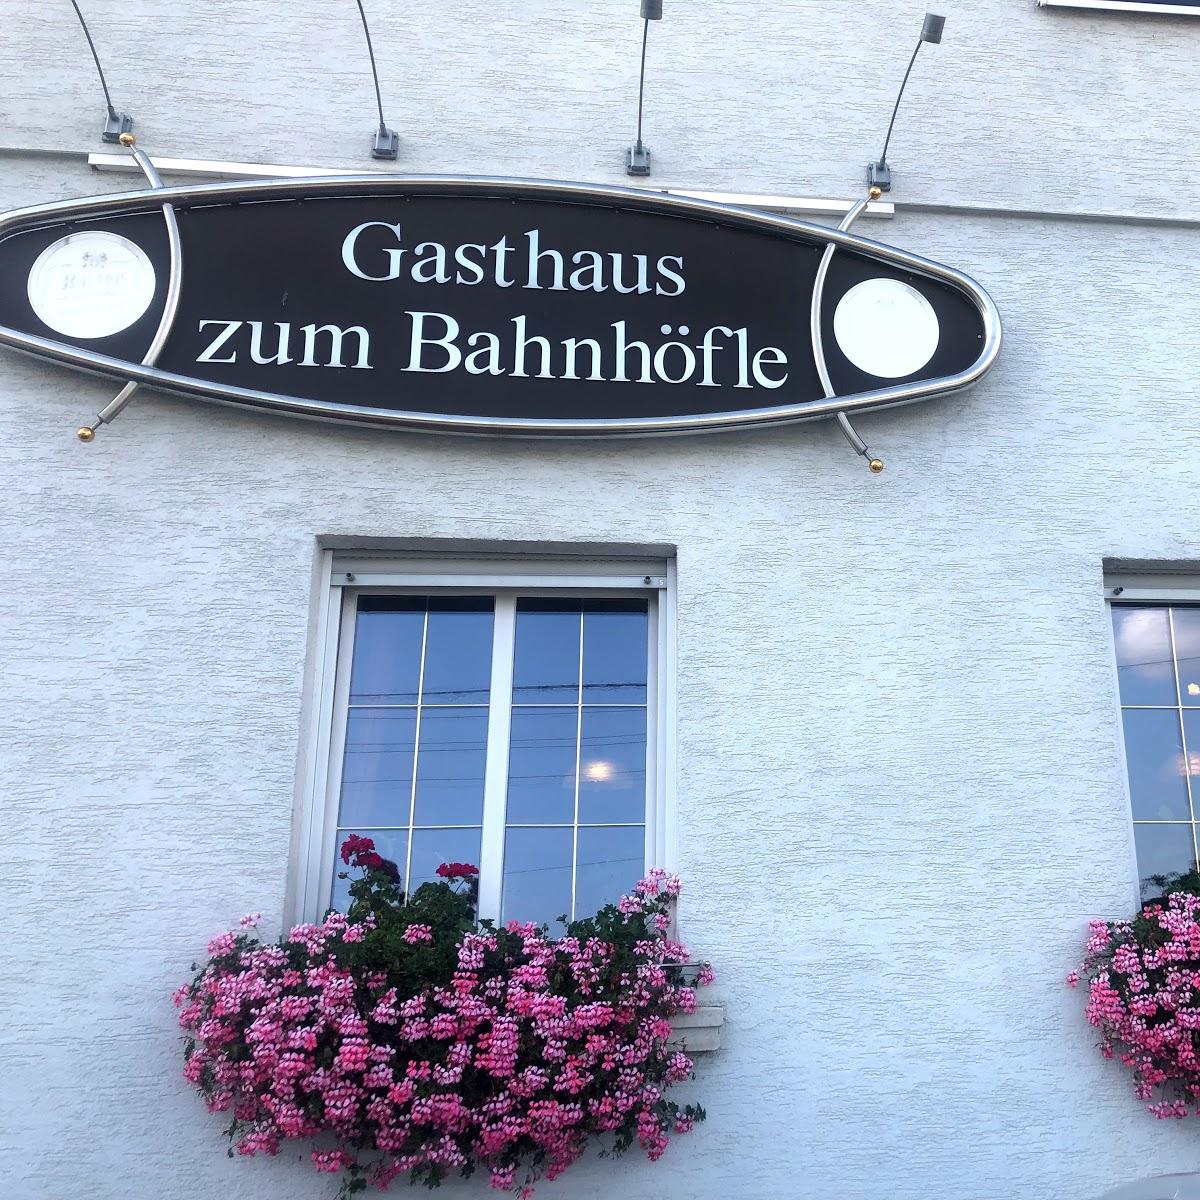 Restaurant "Gasthaus Bahnhöfle" in  Amstetten